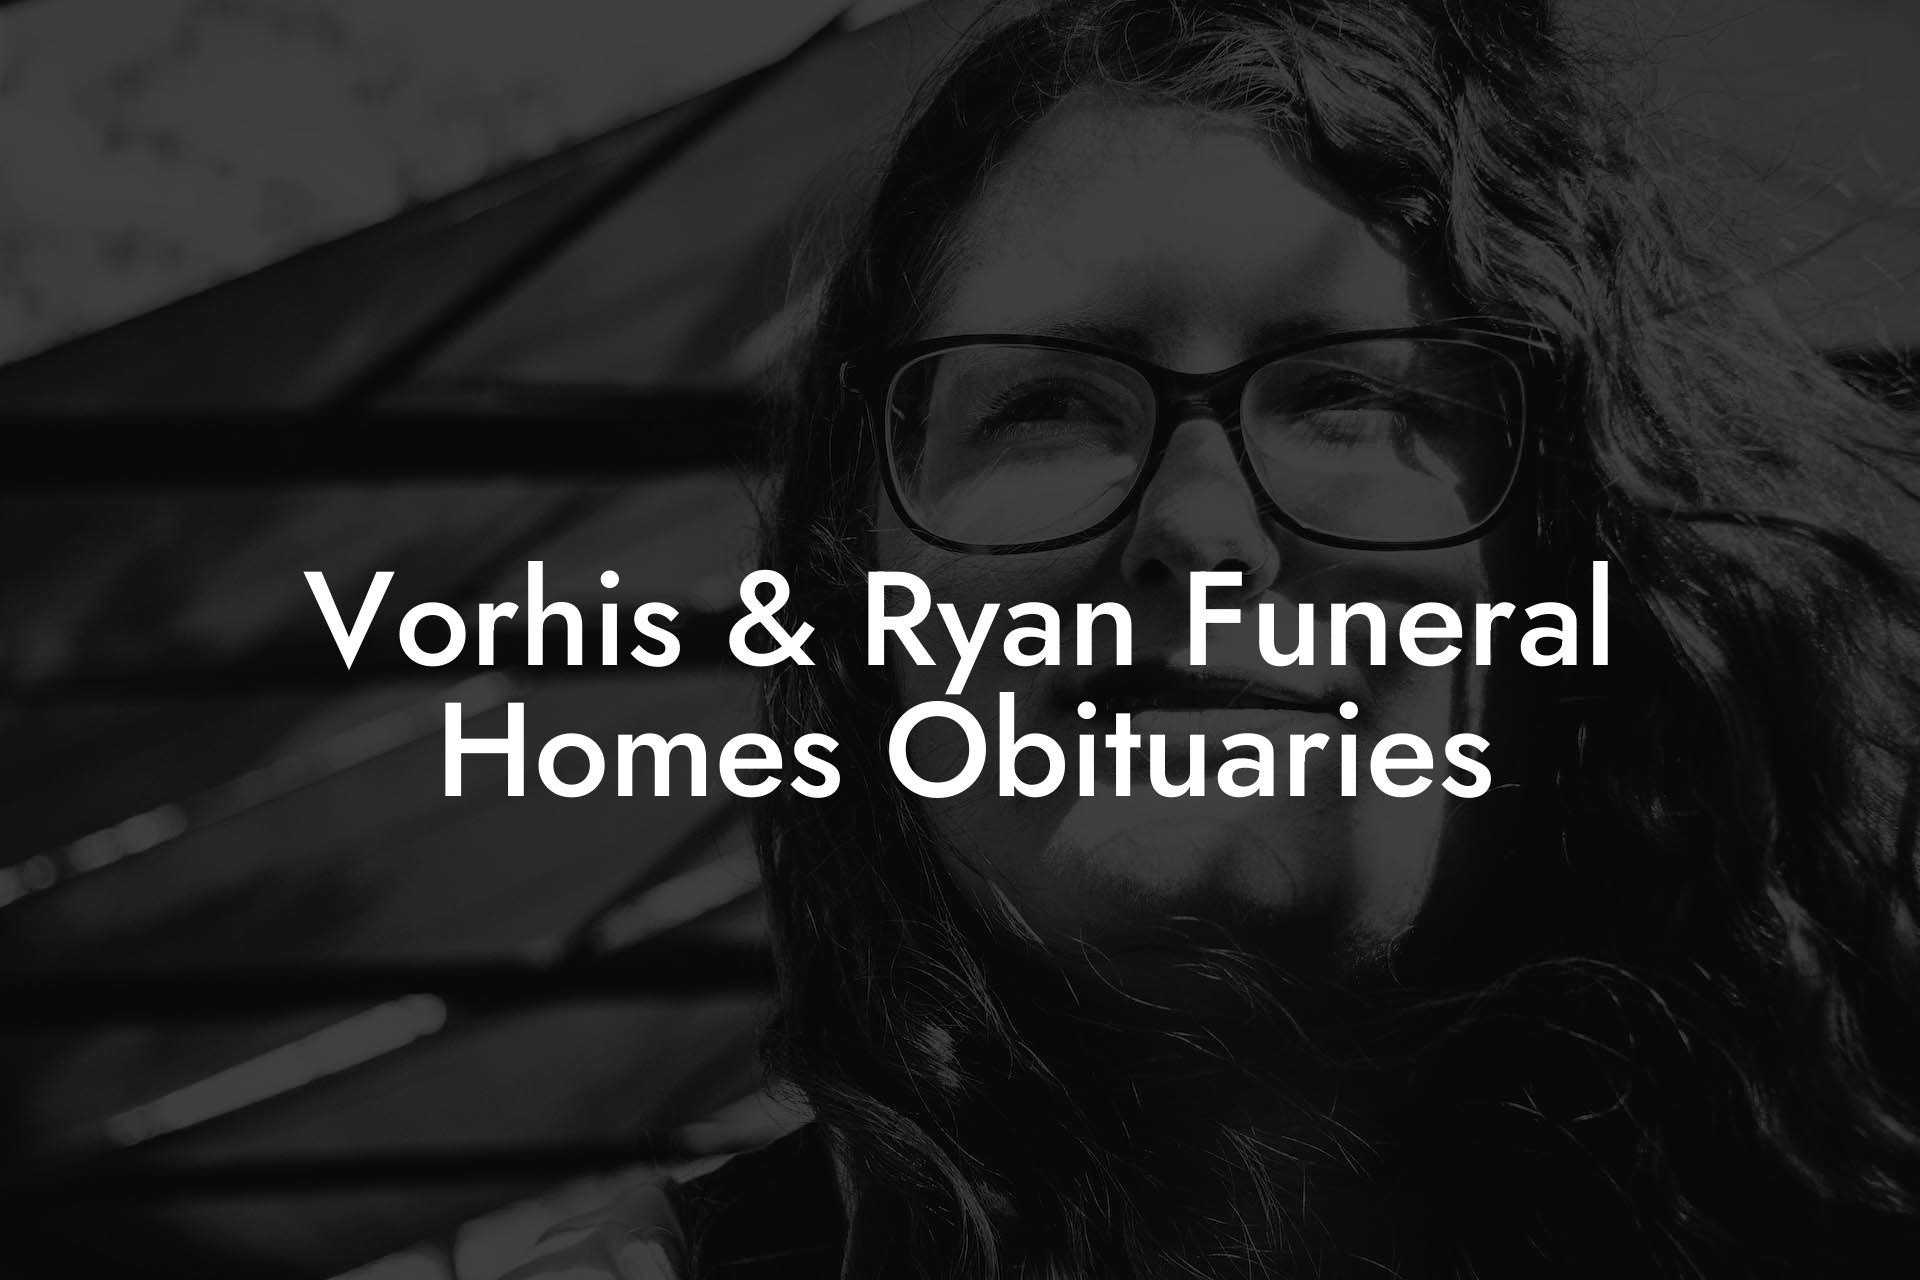 Vorhis & Ryan Funeral Homes Obituaries